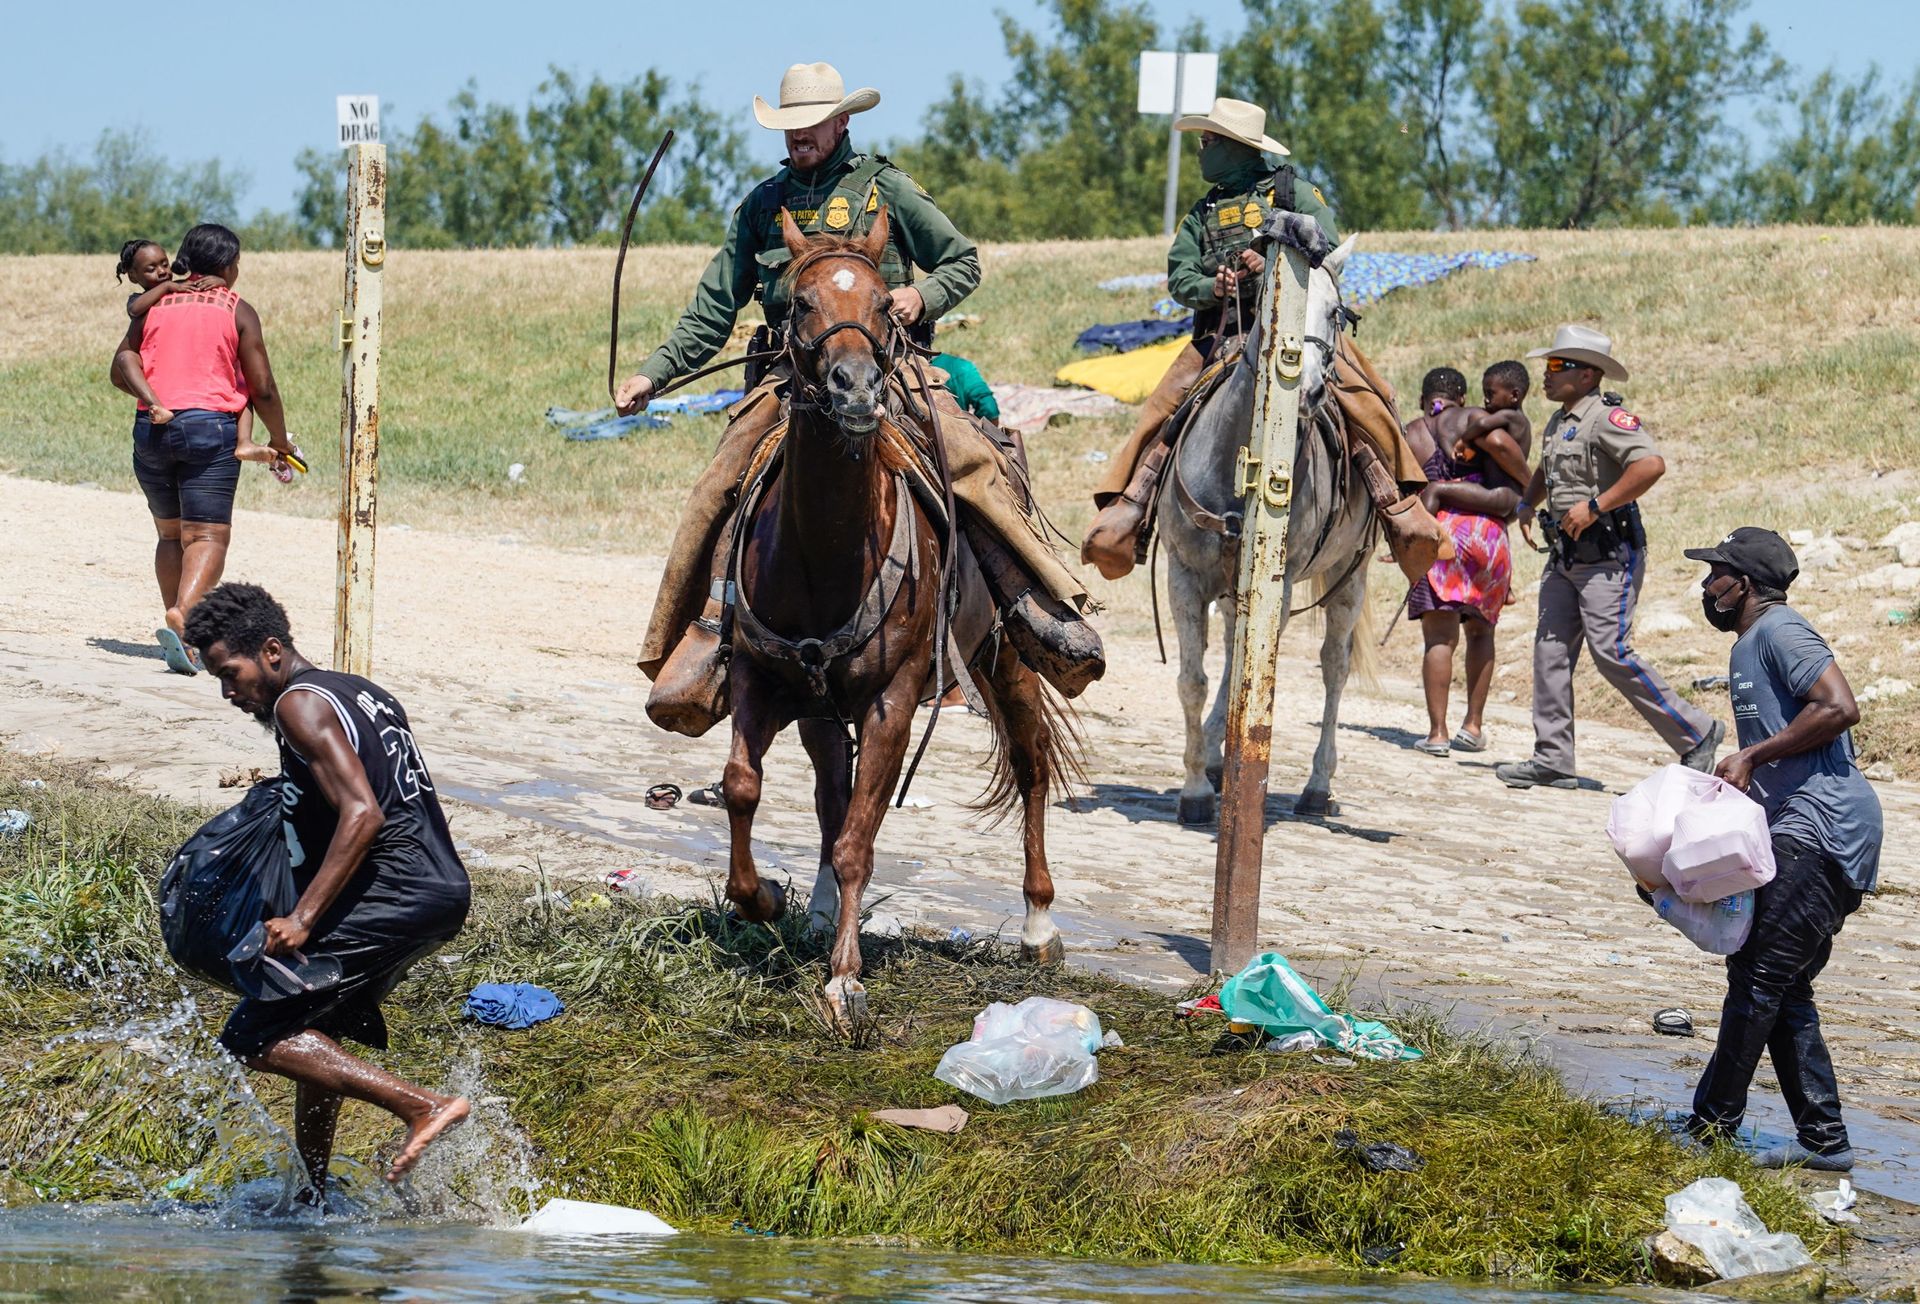 Des agents de la patrouille frontalière des États-Unis à cheval tentent d’empêcher des migrants haïtiens d’entrer dans un campement sur les rives du Rio Grande près du pont international Acuna Del Rio à Del Rio, au Texas, le 19 septembre 2021.